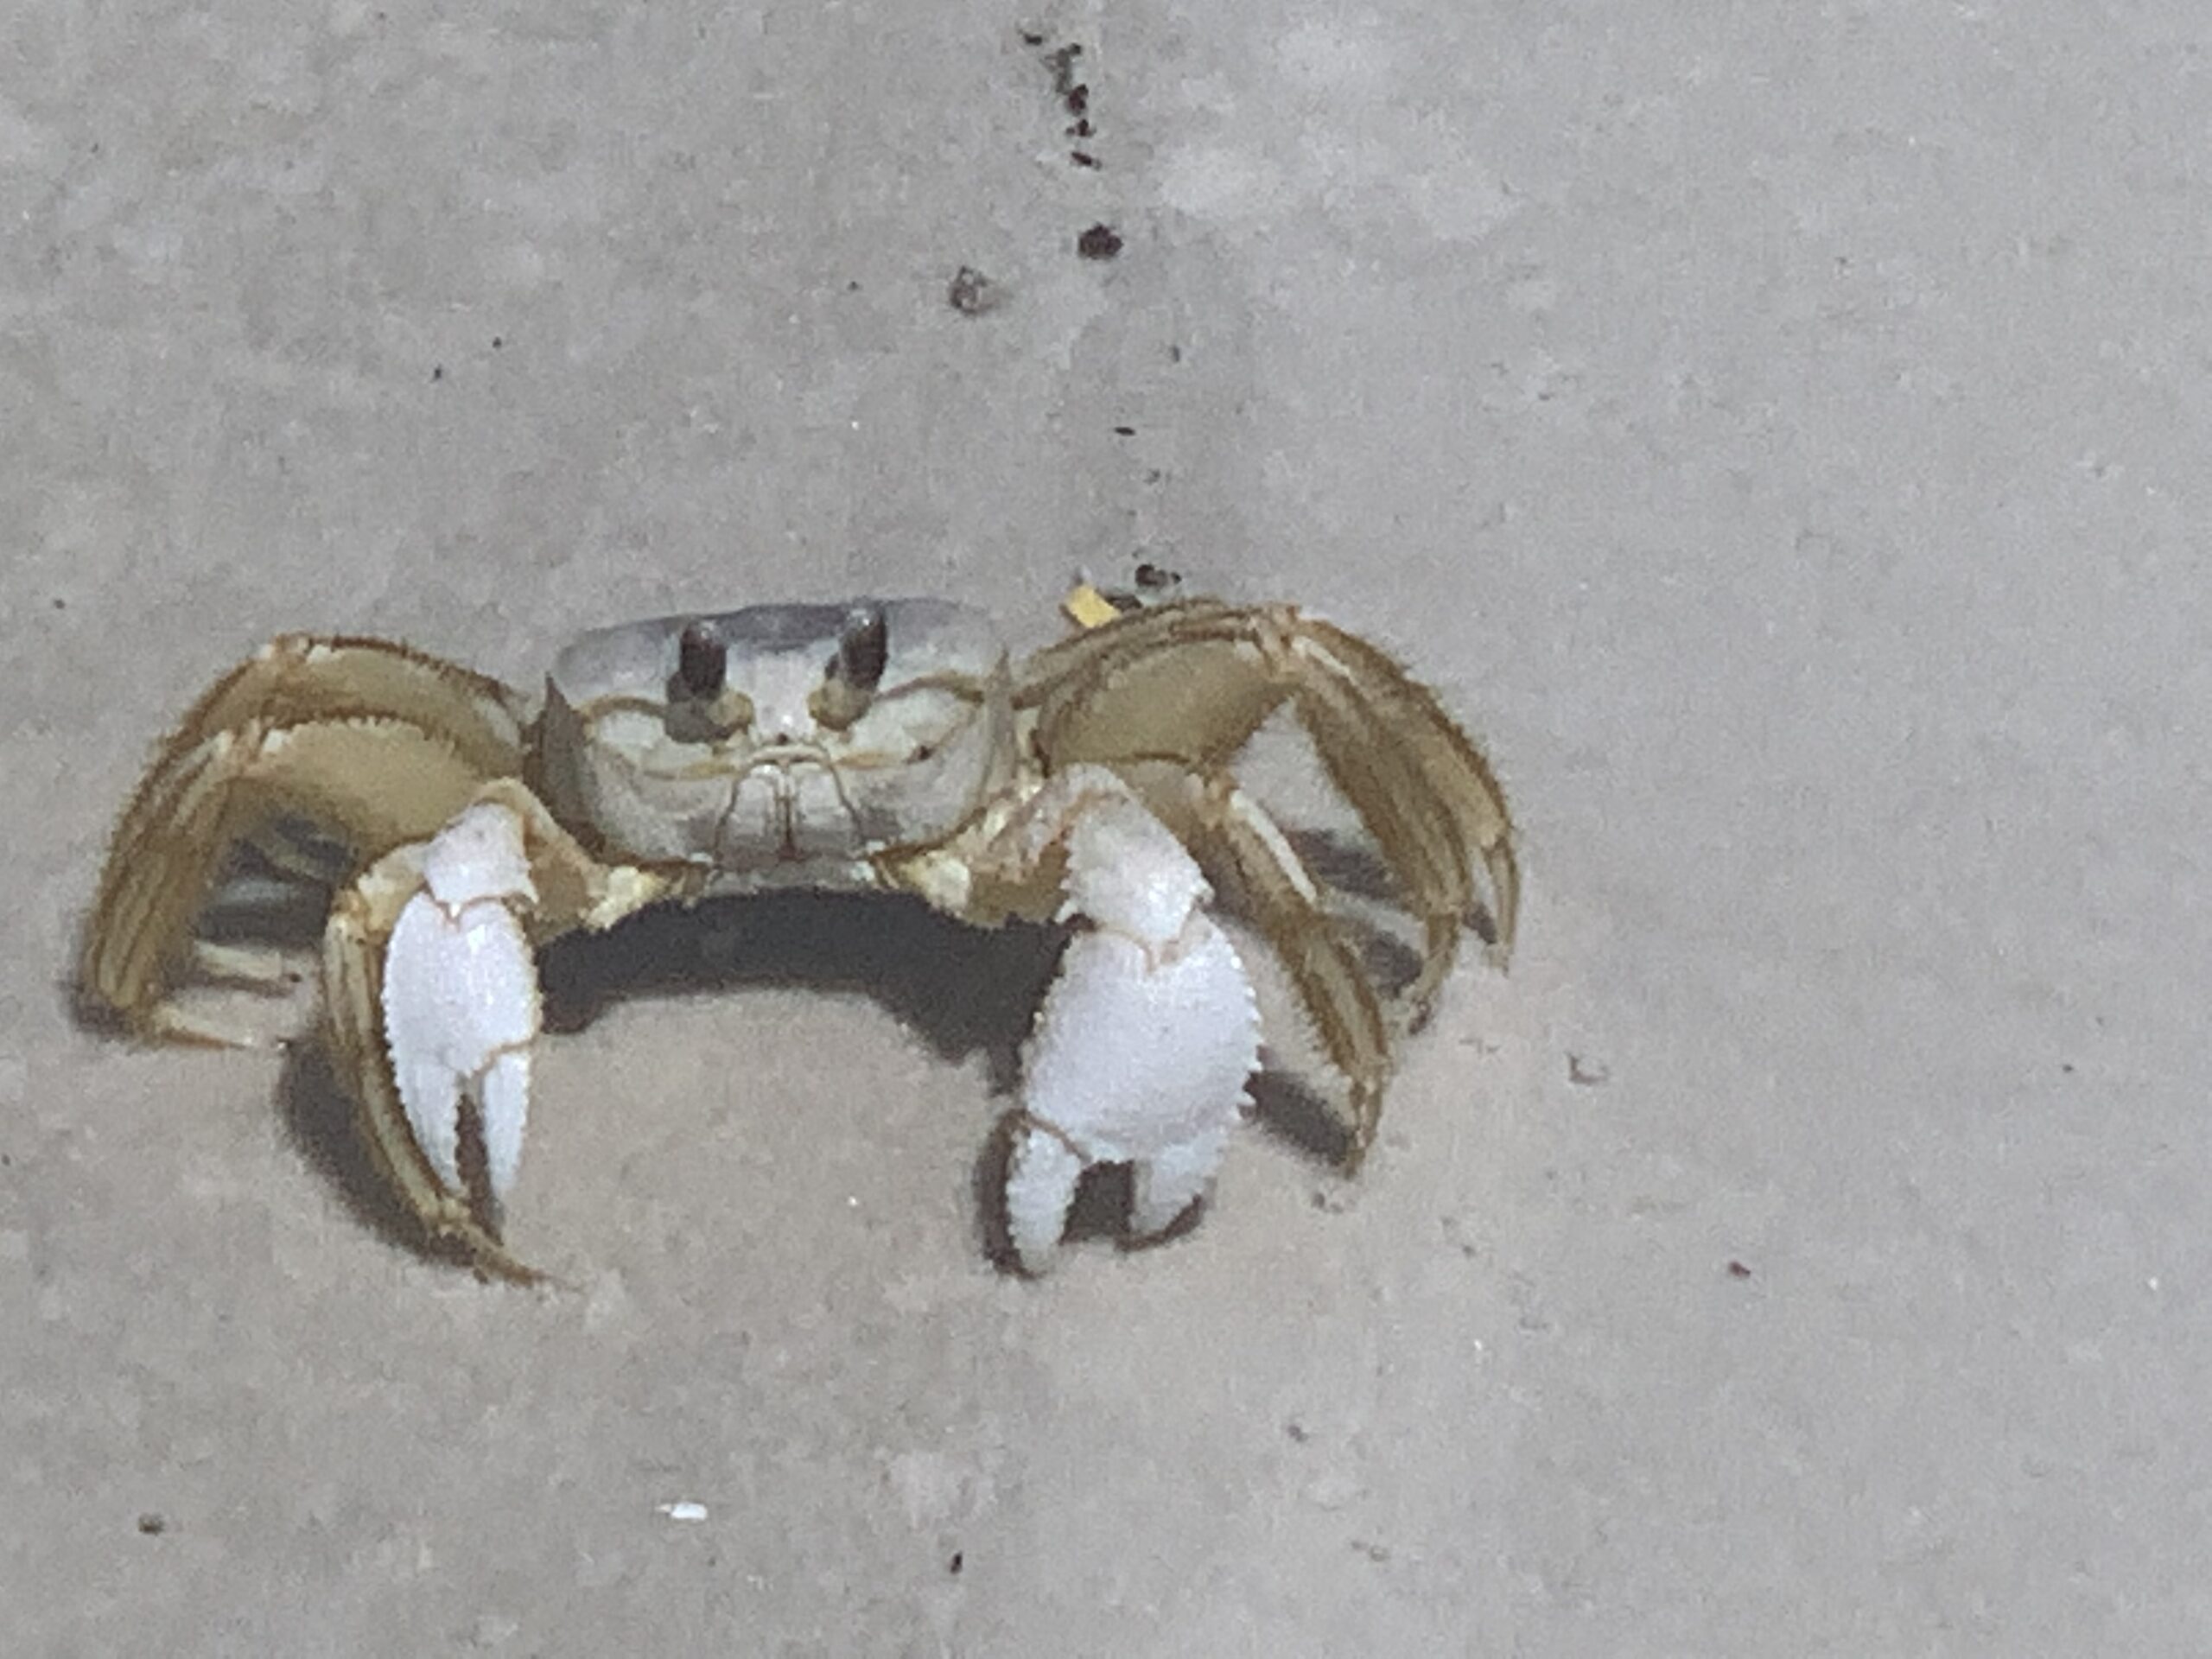 Cape San Blas Vacation Rentals decorative image of crab